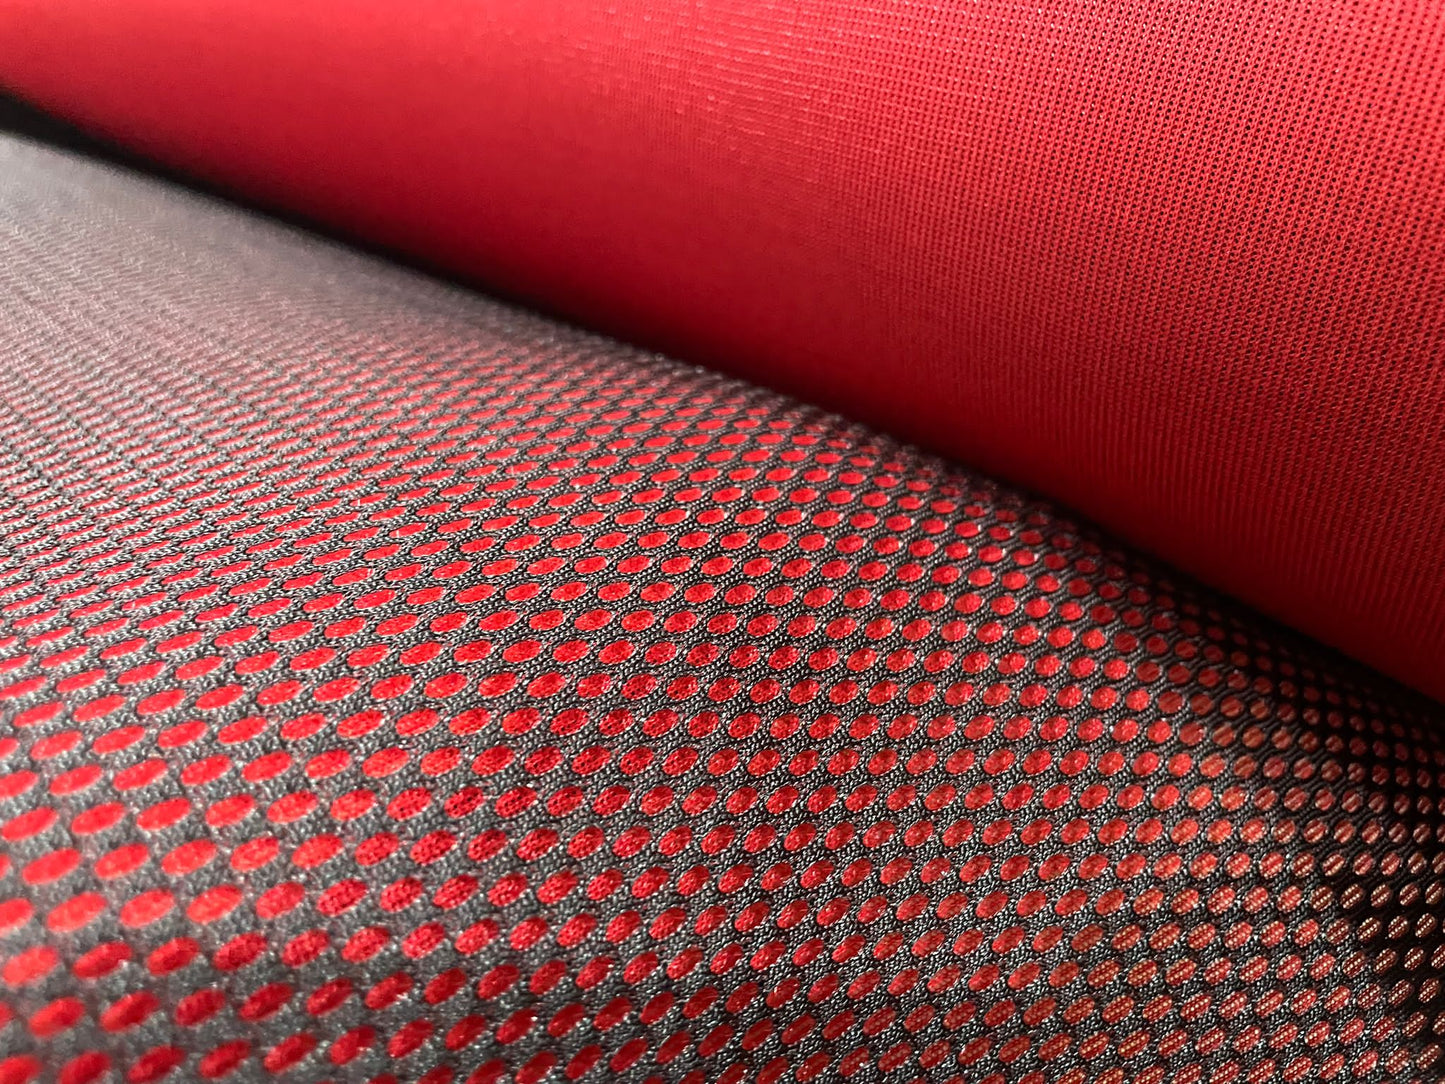 Red Mesh Fabric